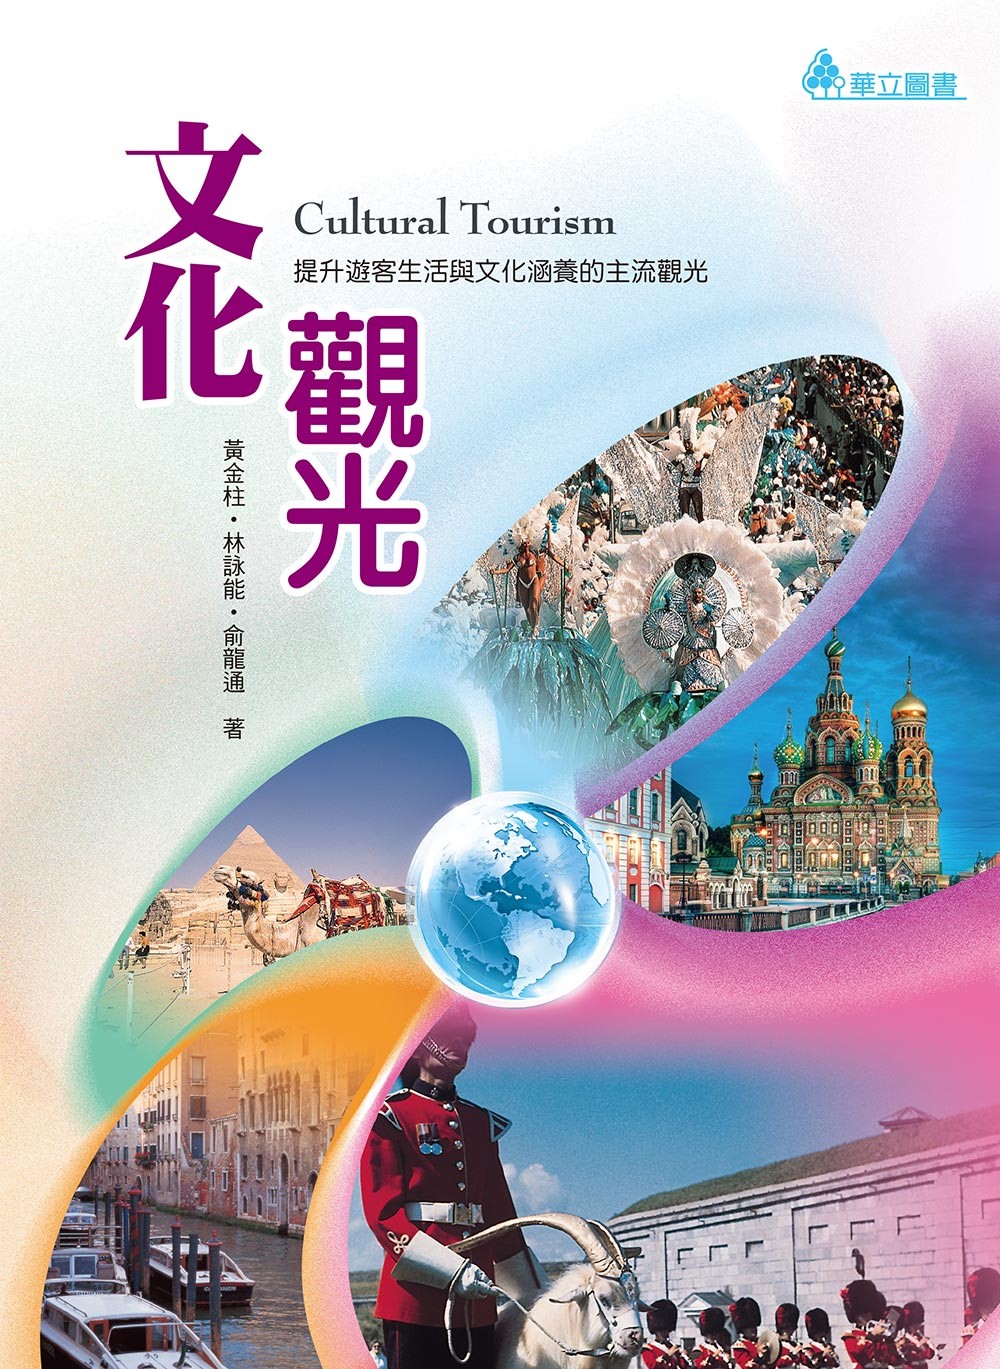 文化觀光：提升遊客生活與文化涵養的主流觀光